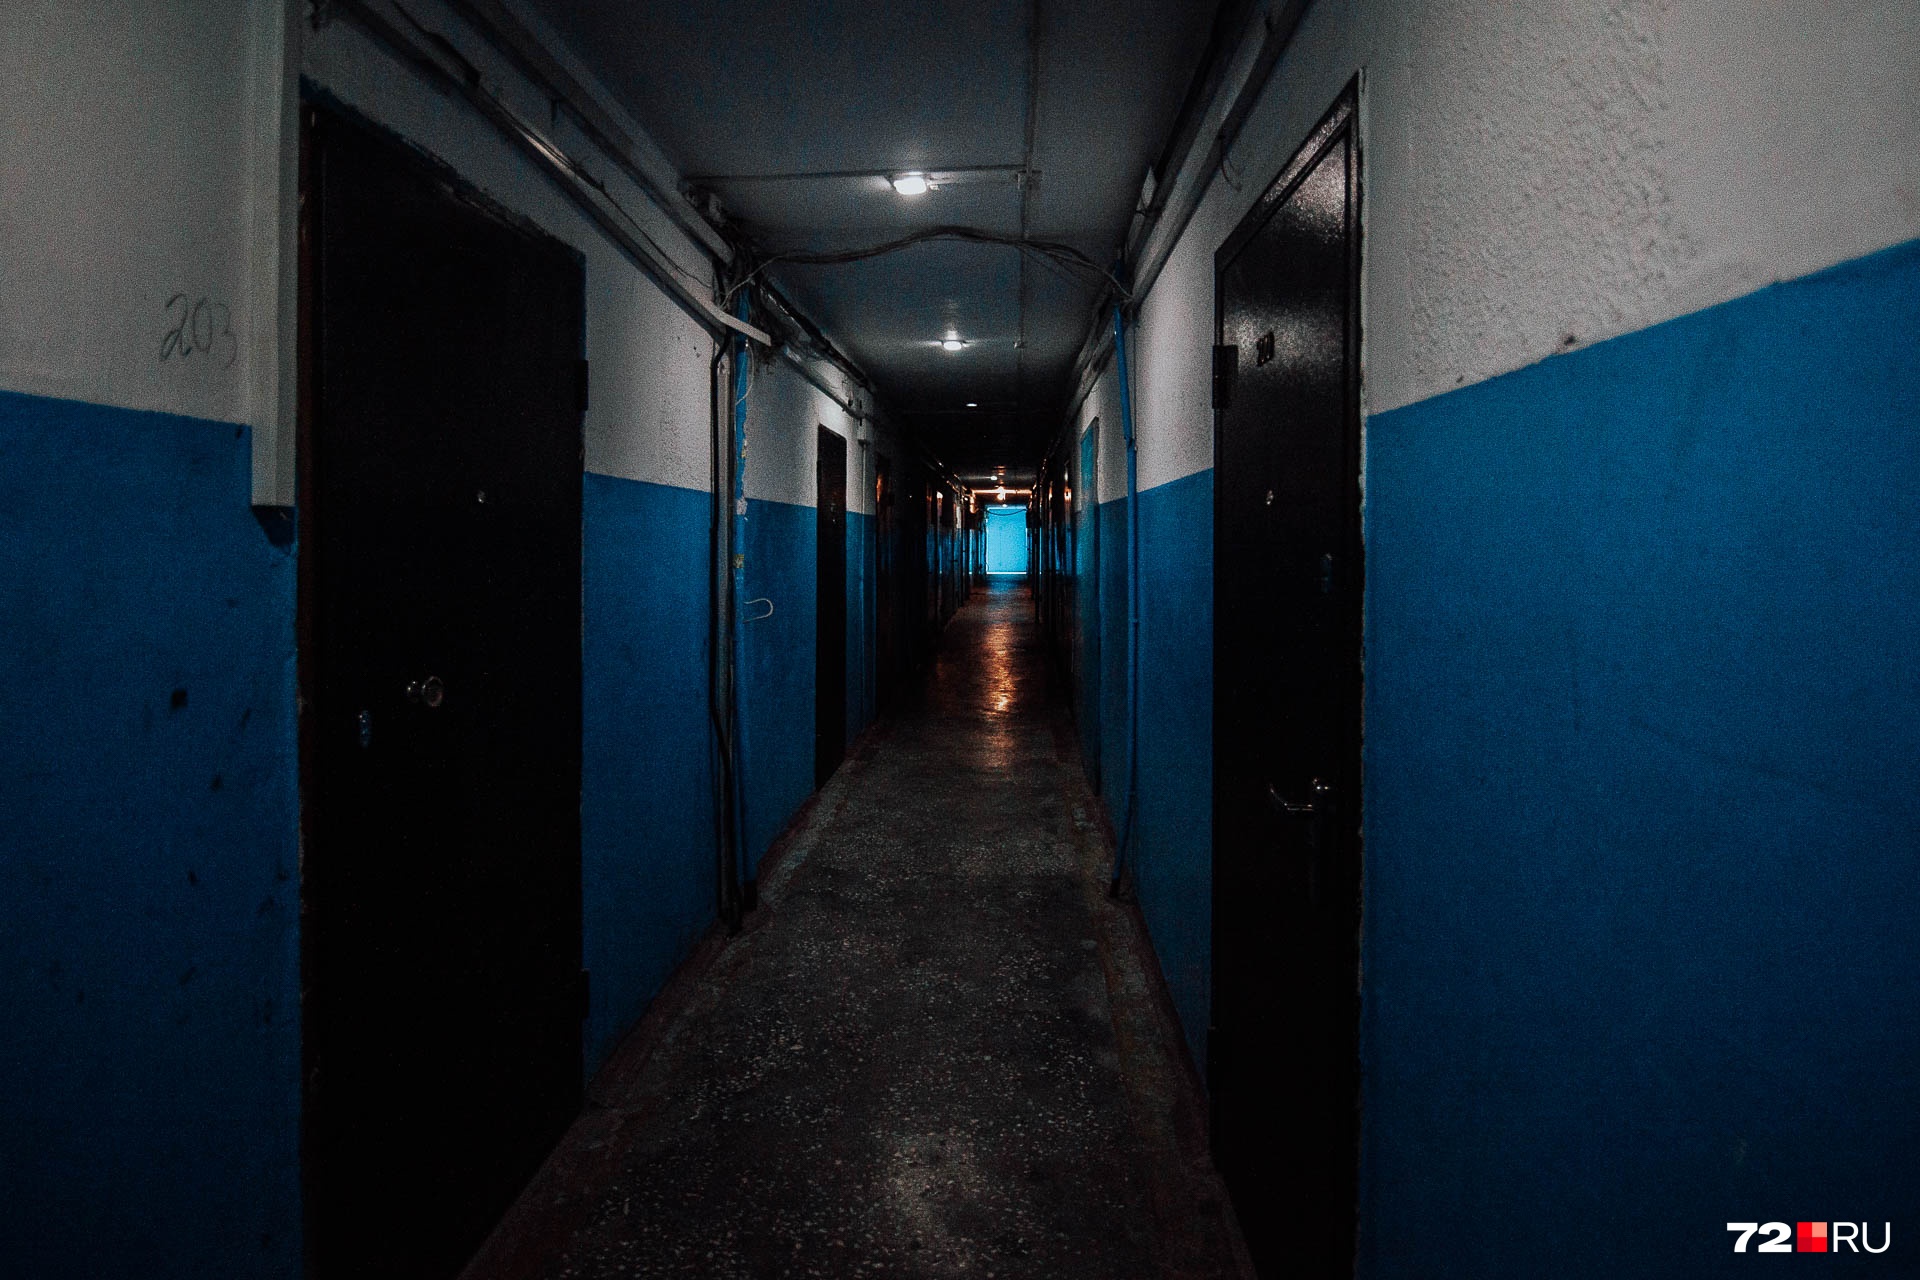 Возможно, одна известная панк-рок группа бы вдохновилась, увидев этот «длинный мрачный коридор»